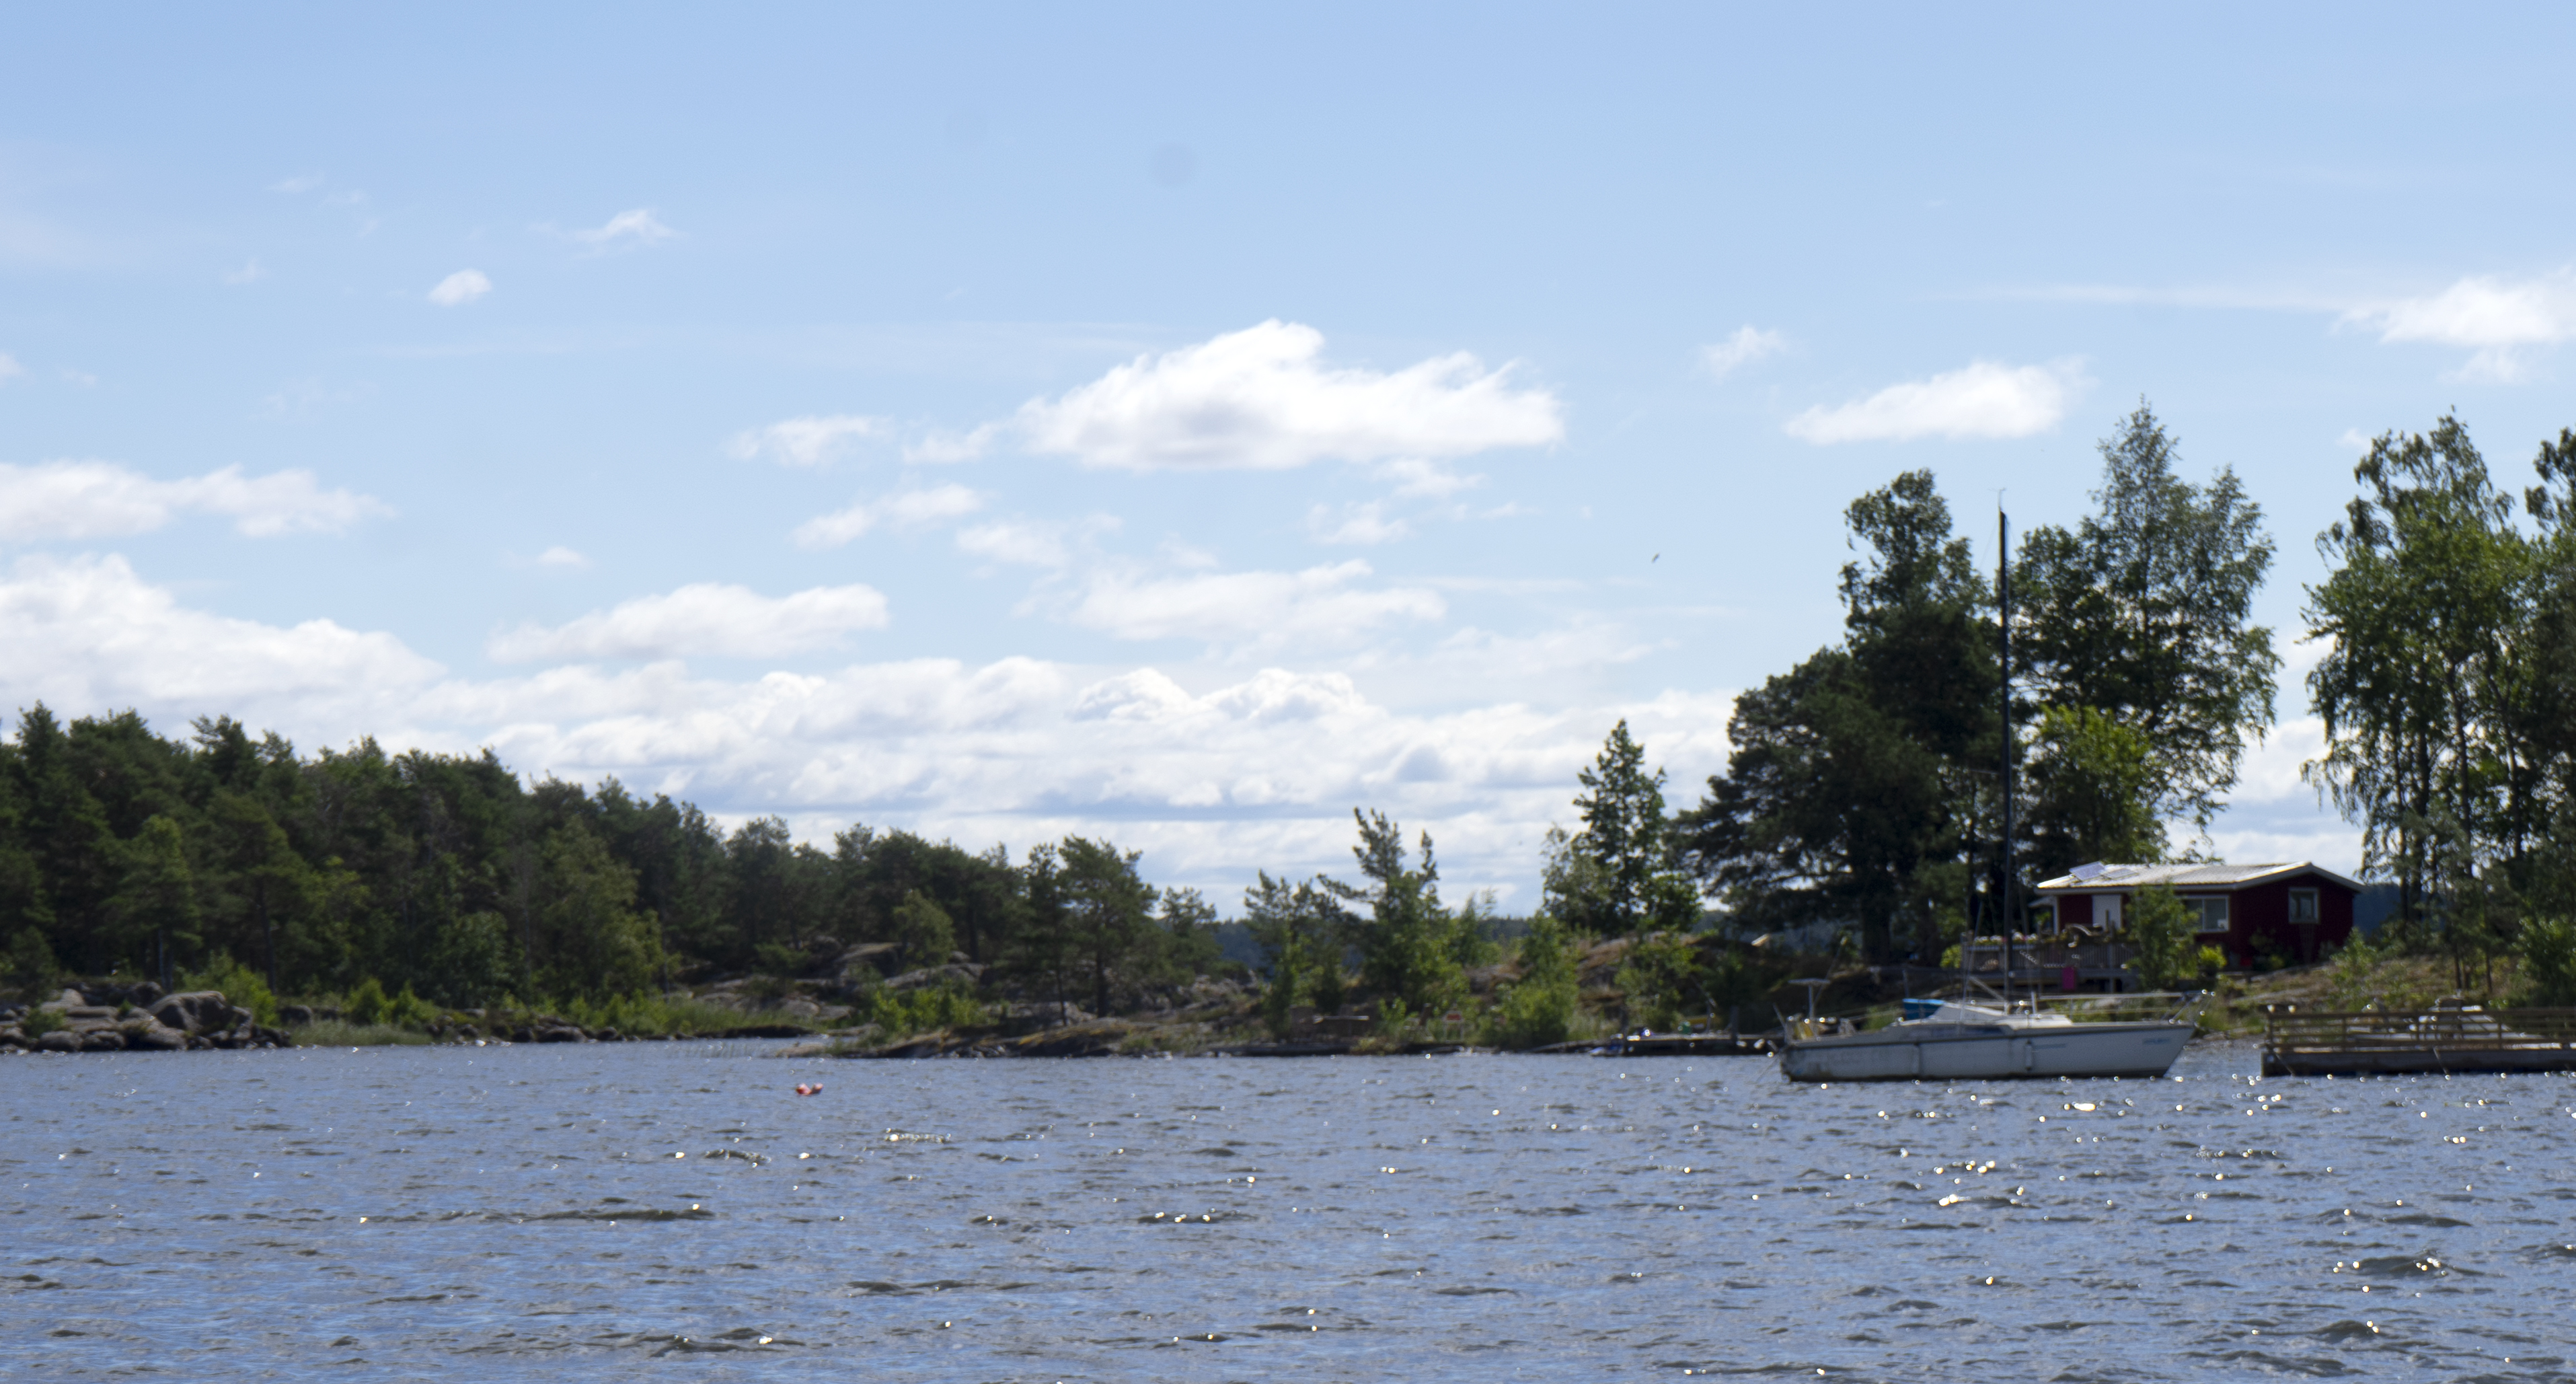 En ö med en båt vid brygga och liten sommarstuga. Bilden tagen på vägen ut mot Sööa från Mörudden.